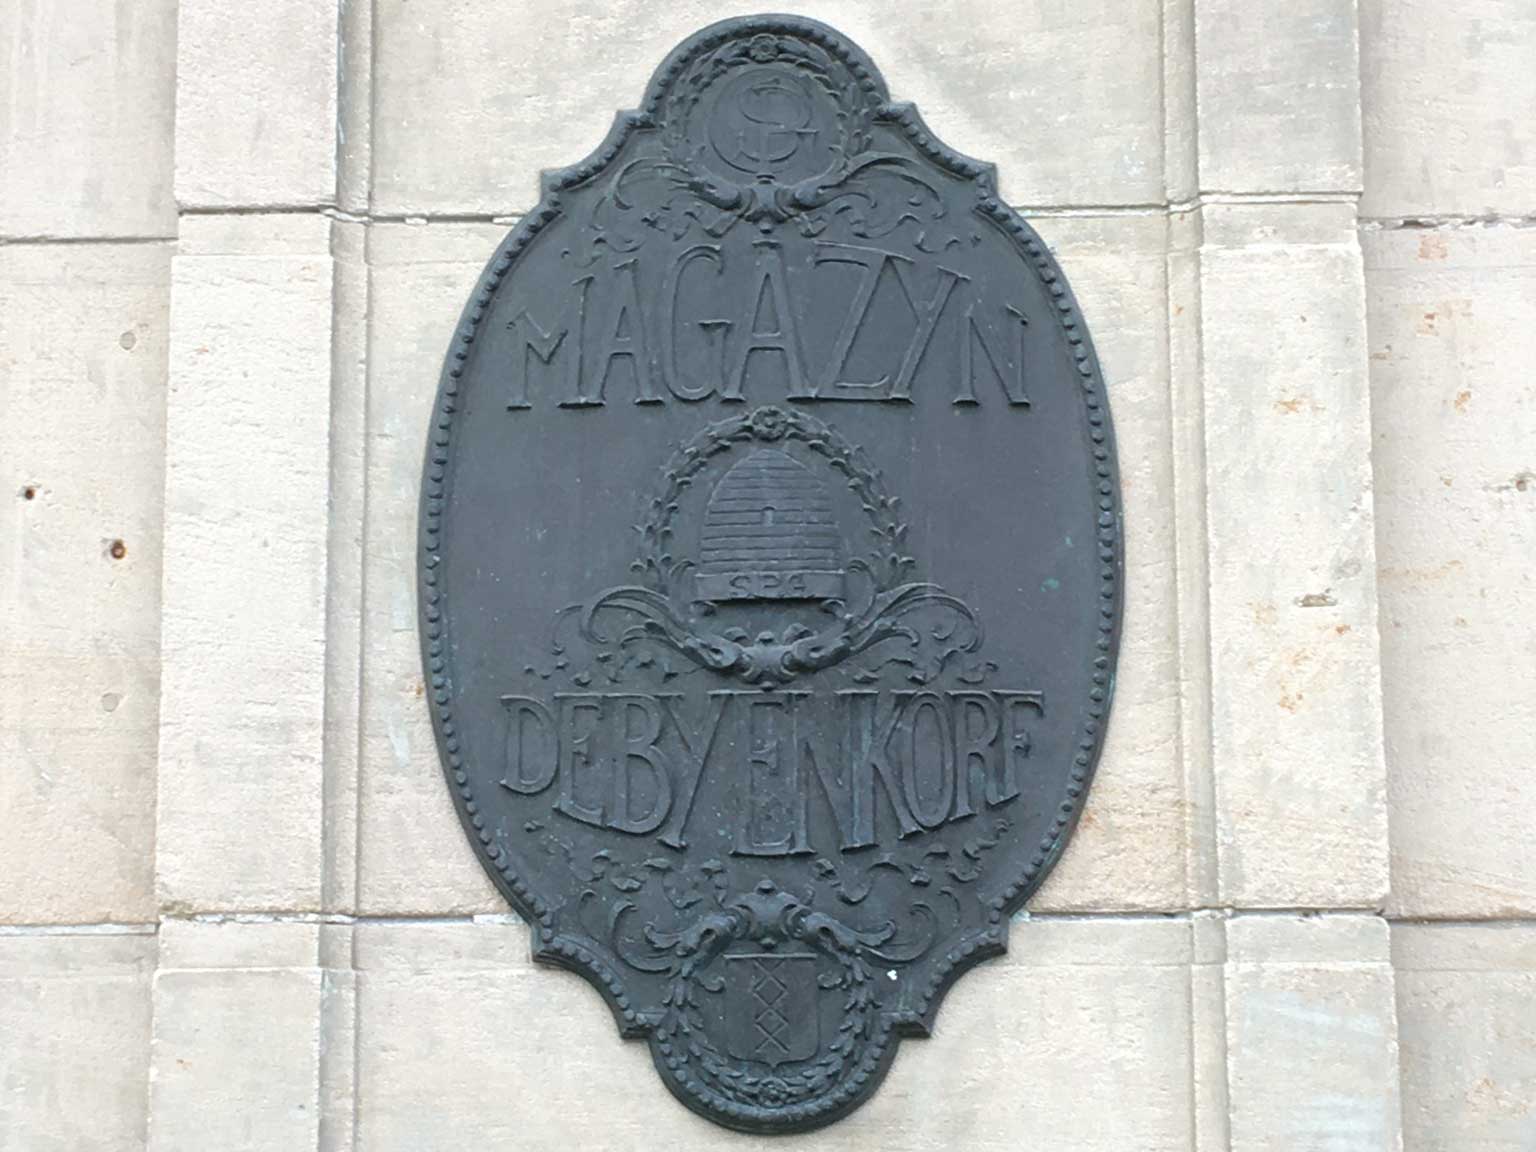 Metalen schild aan de kant van het Damrak van De Bijenkorf, Amsterdam, met bijenkorf en monogram